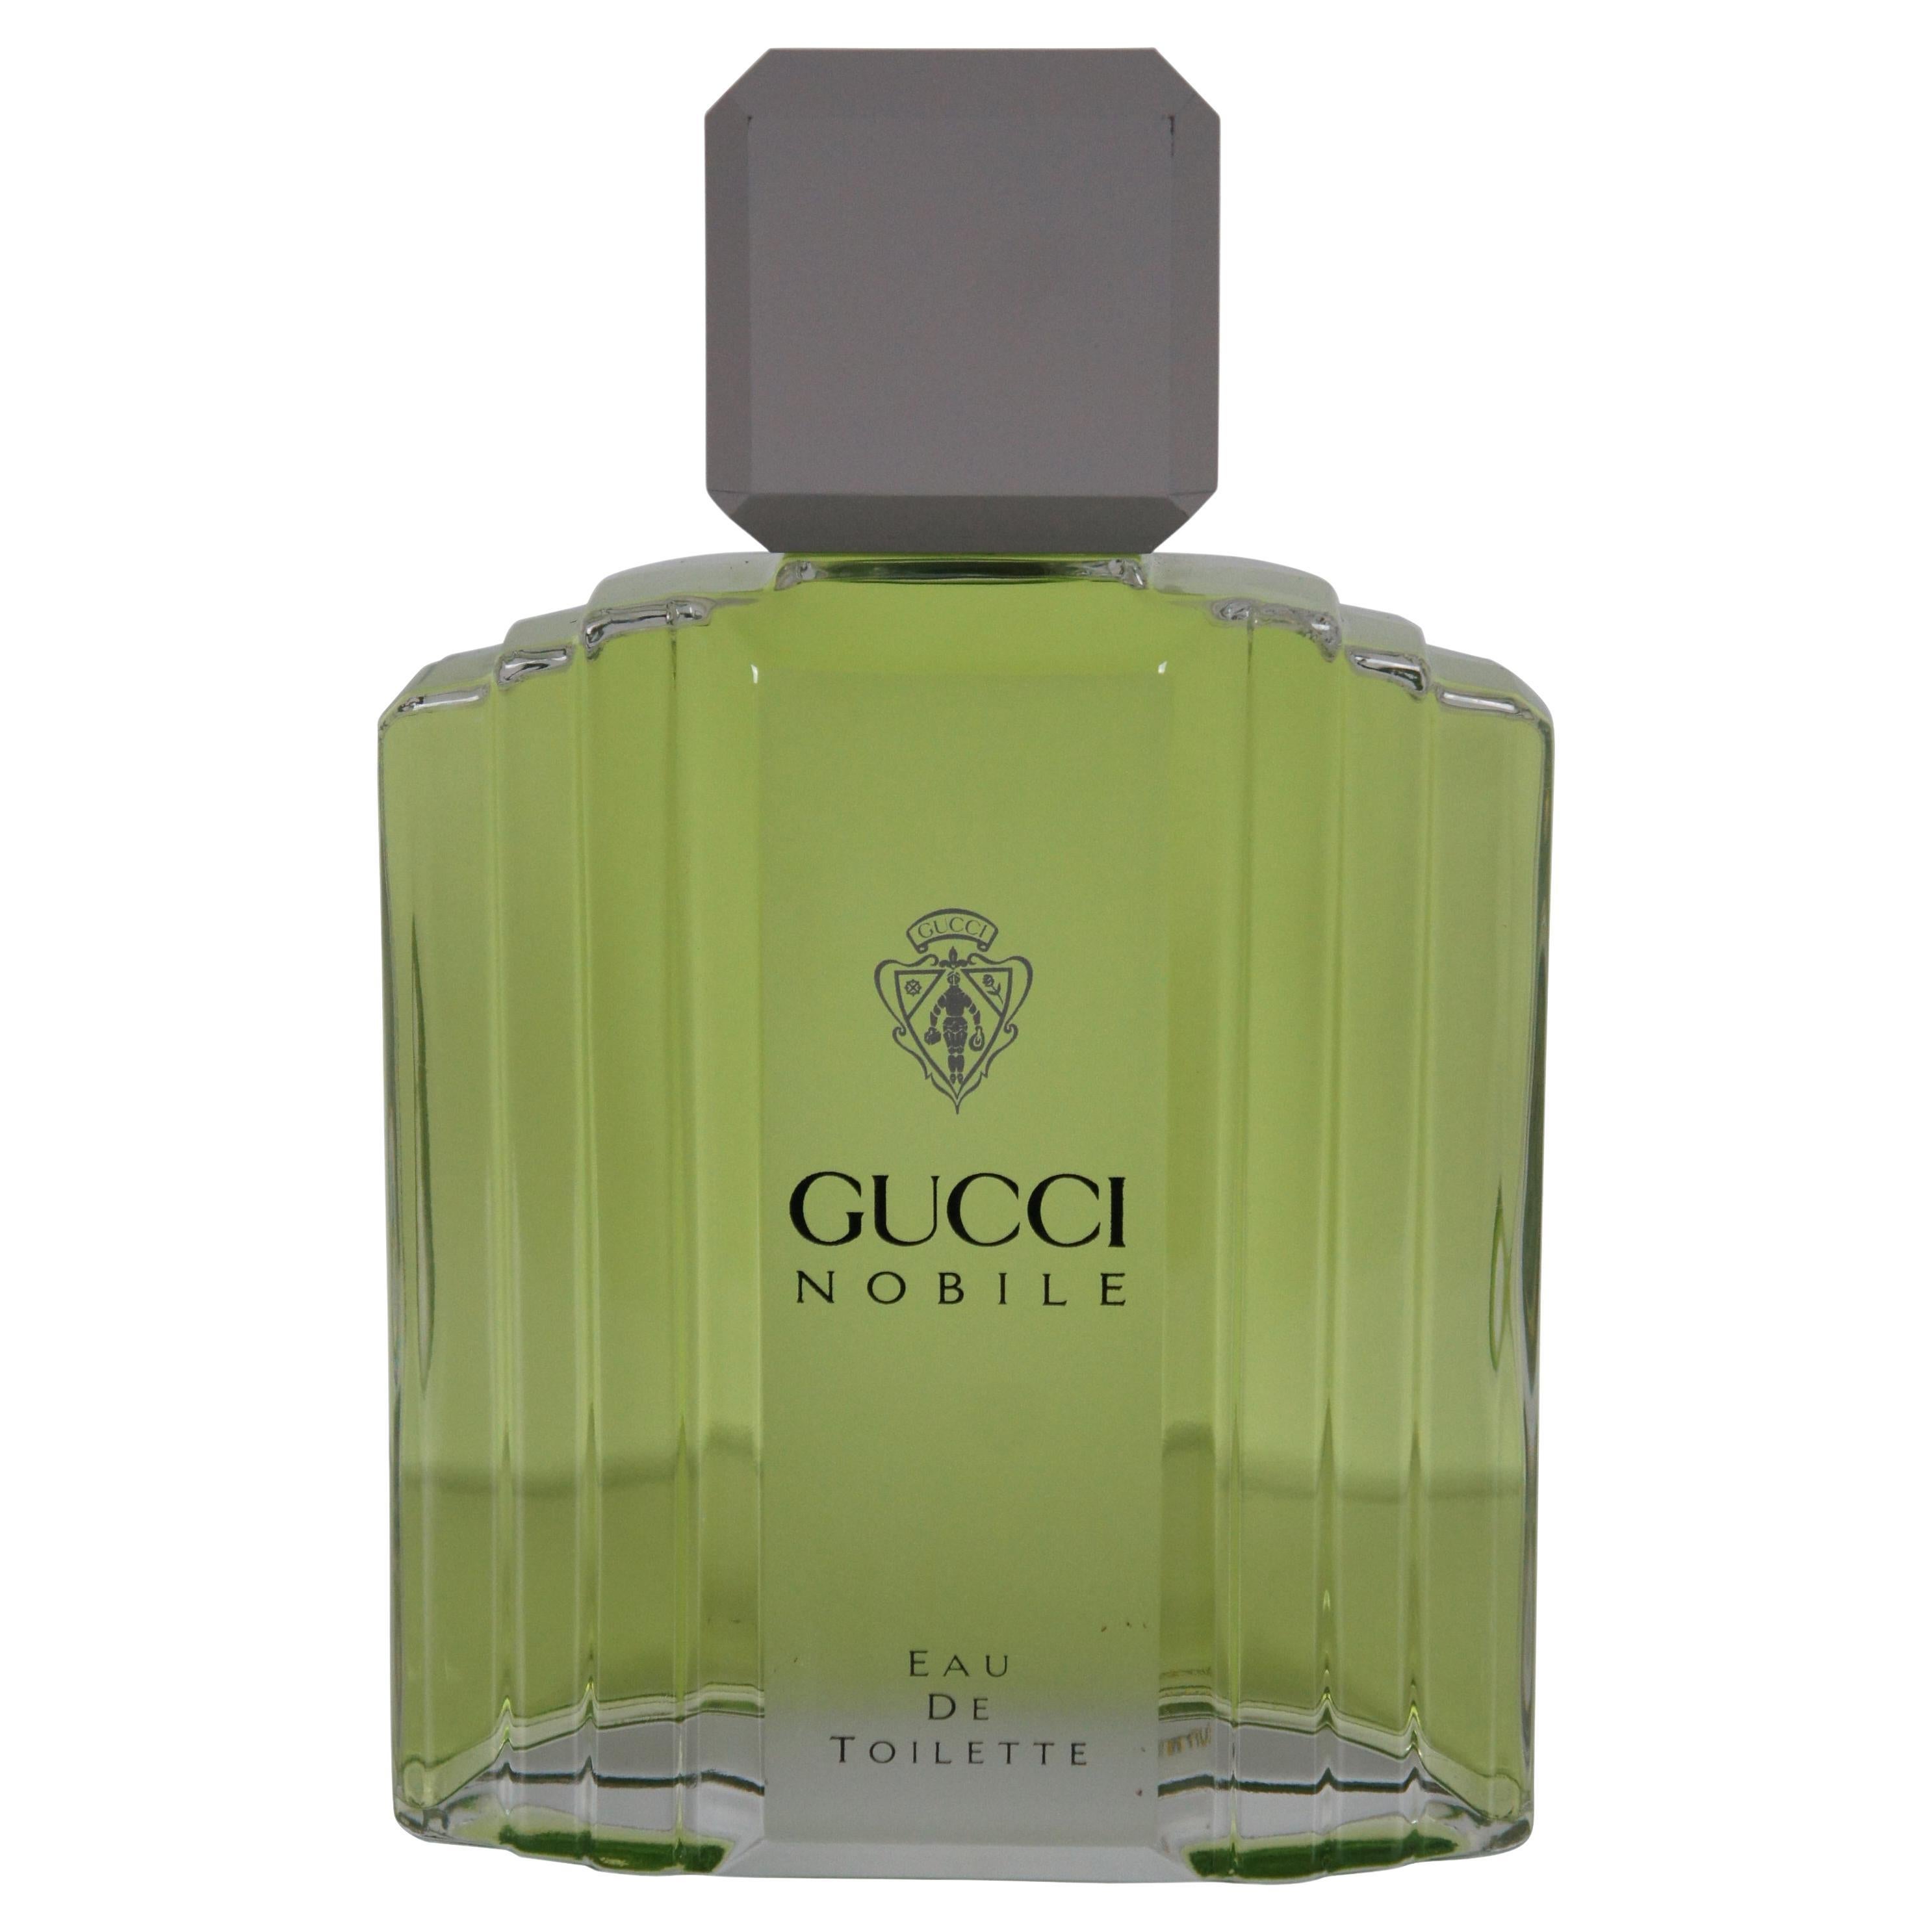 Gucci Nobile Eau Toilette Factice Dummy Cologne Perfume Bottle Store Display en vente